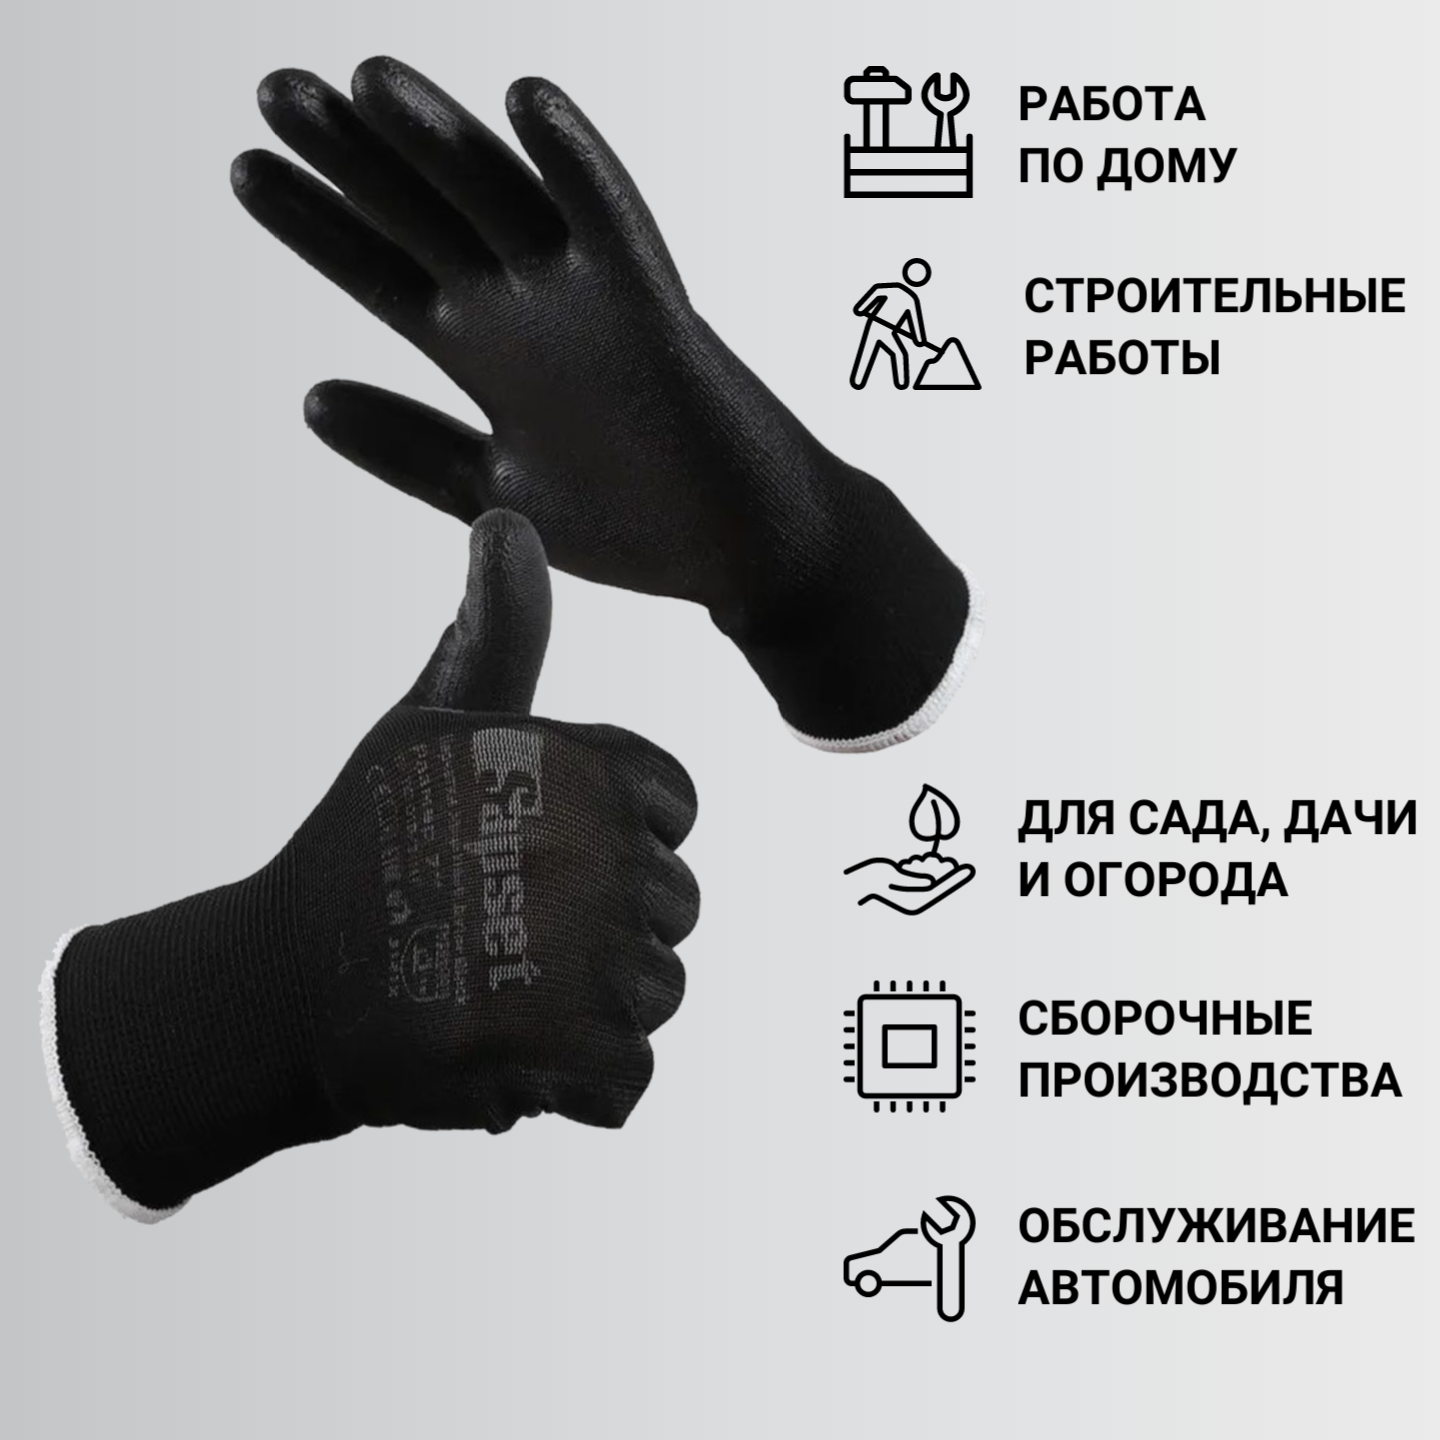 Перчатки рабочие с покрытием из полиуретана Sapset Avior Black размер L/9 - 10 пар